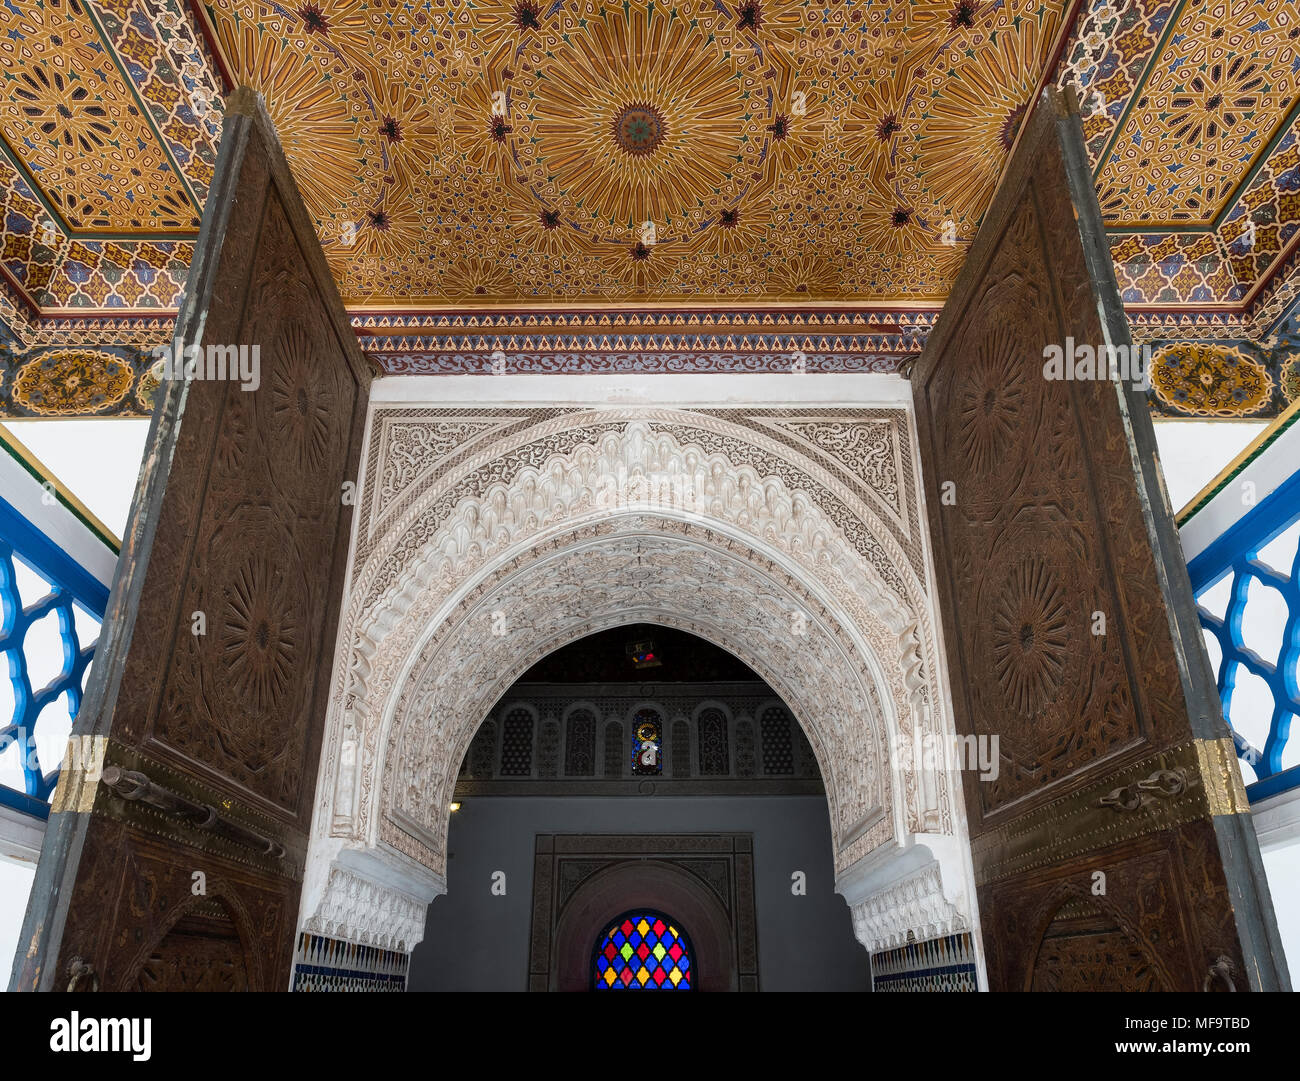 Exquisito detalle ornamental de una puerta en el palacio Bahia, Marrakech, Marruecos Foto de stock